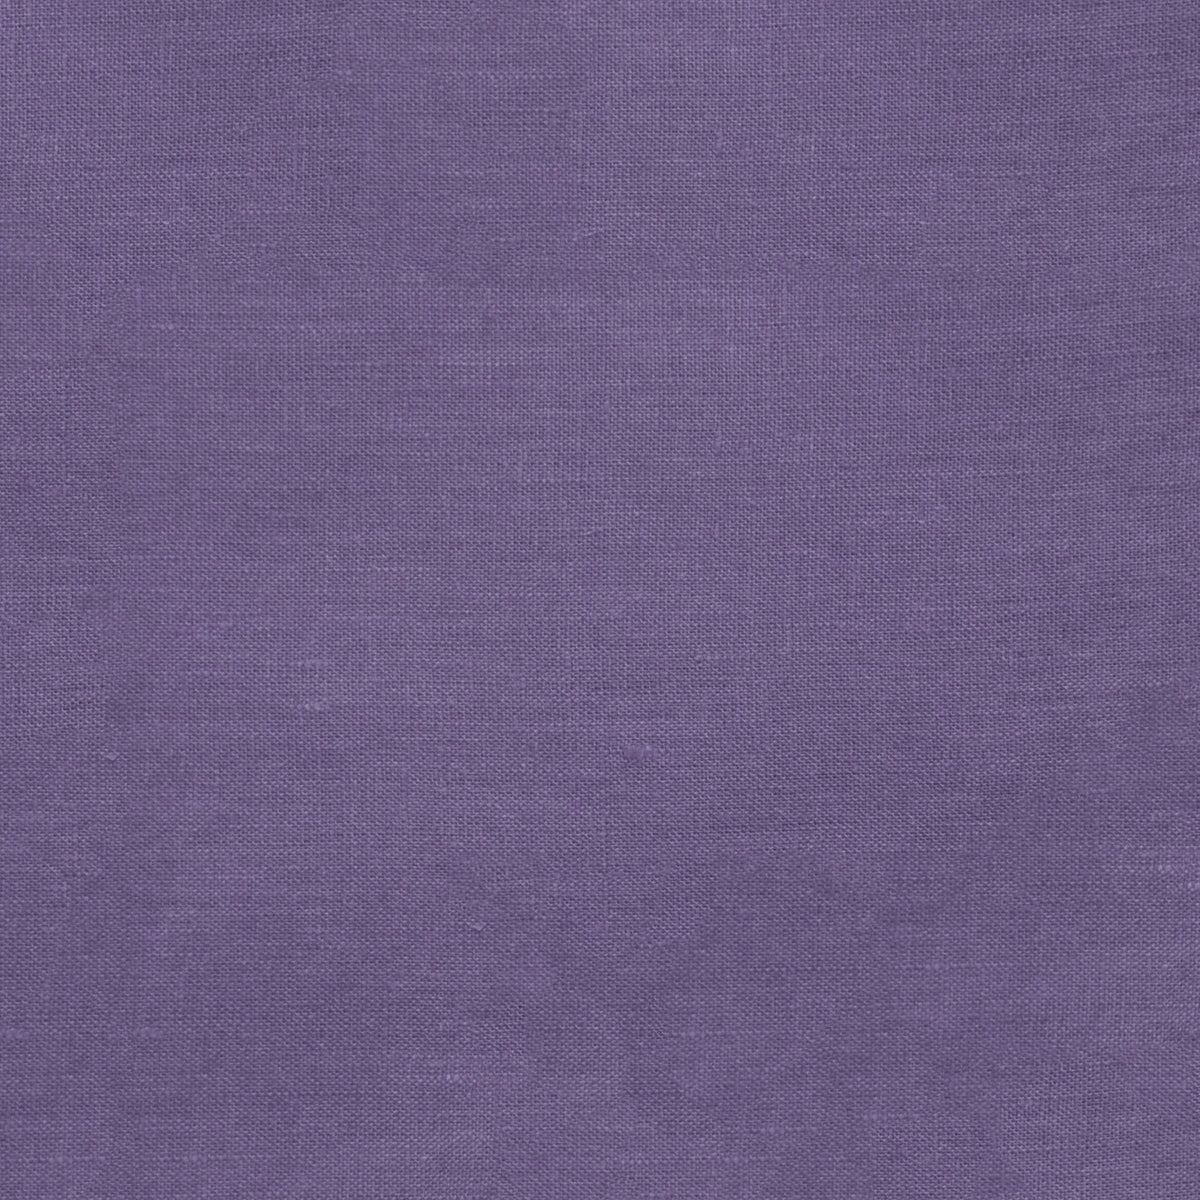 Sferra Festival Color Swatch Sample Purple